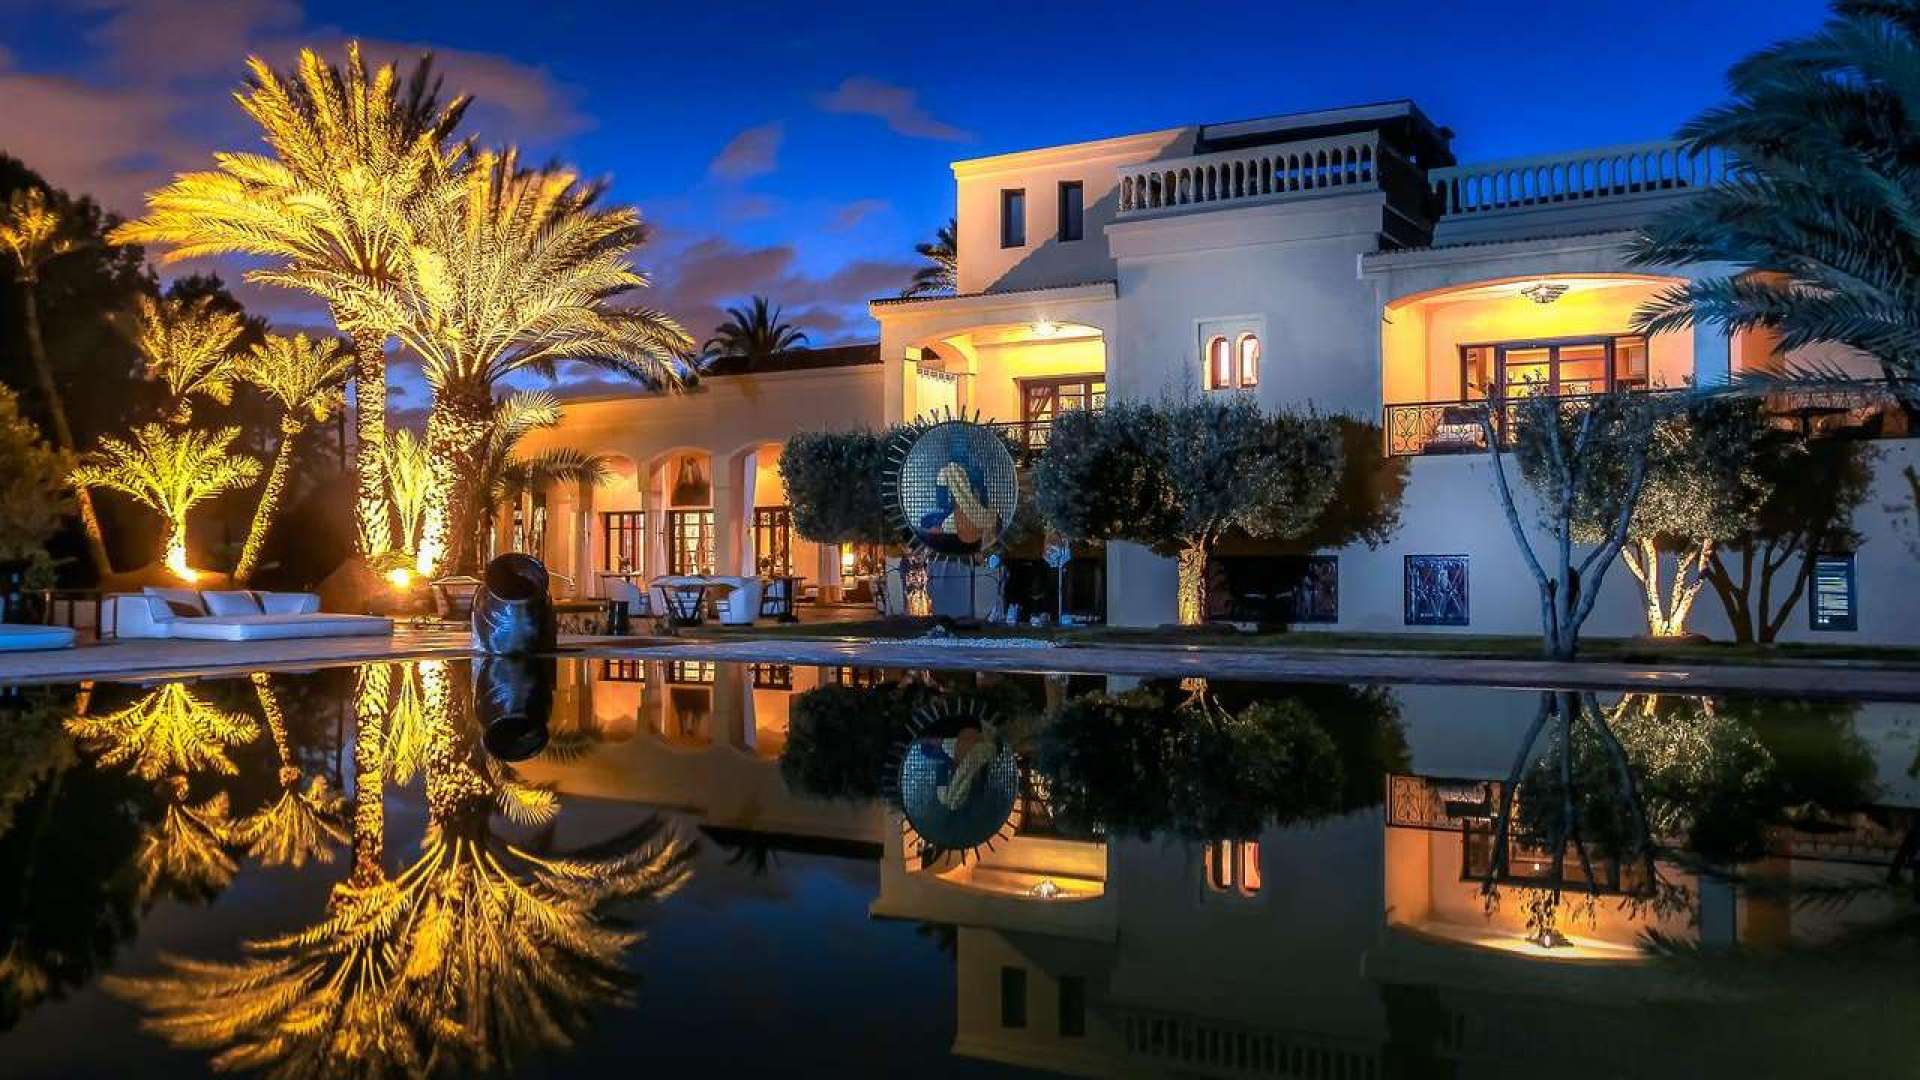 Location de vacances,Villa,Palais de luxe Palmeraie : luxe, charme et discrétion,Marrakech,Palmeraie